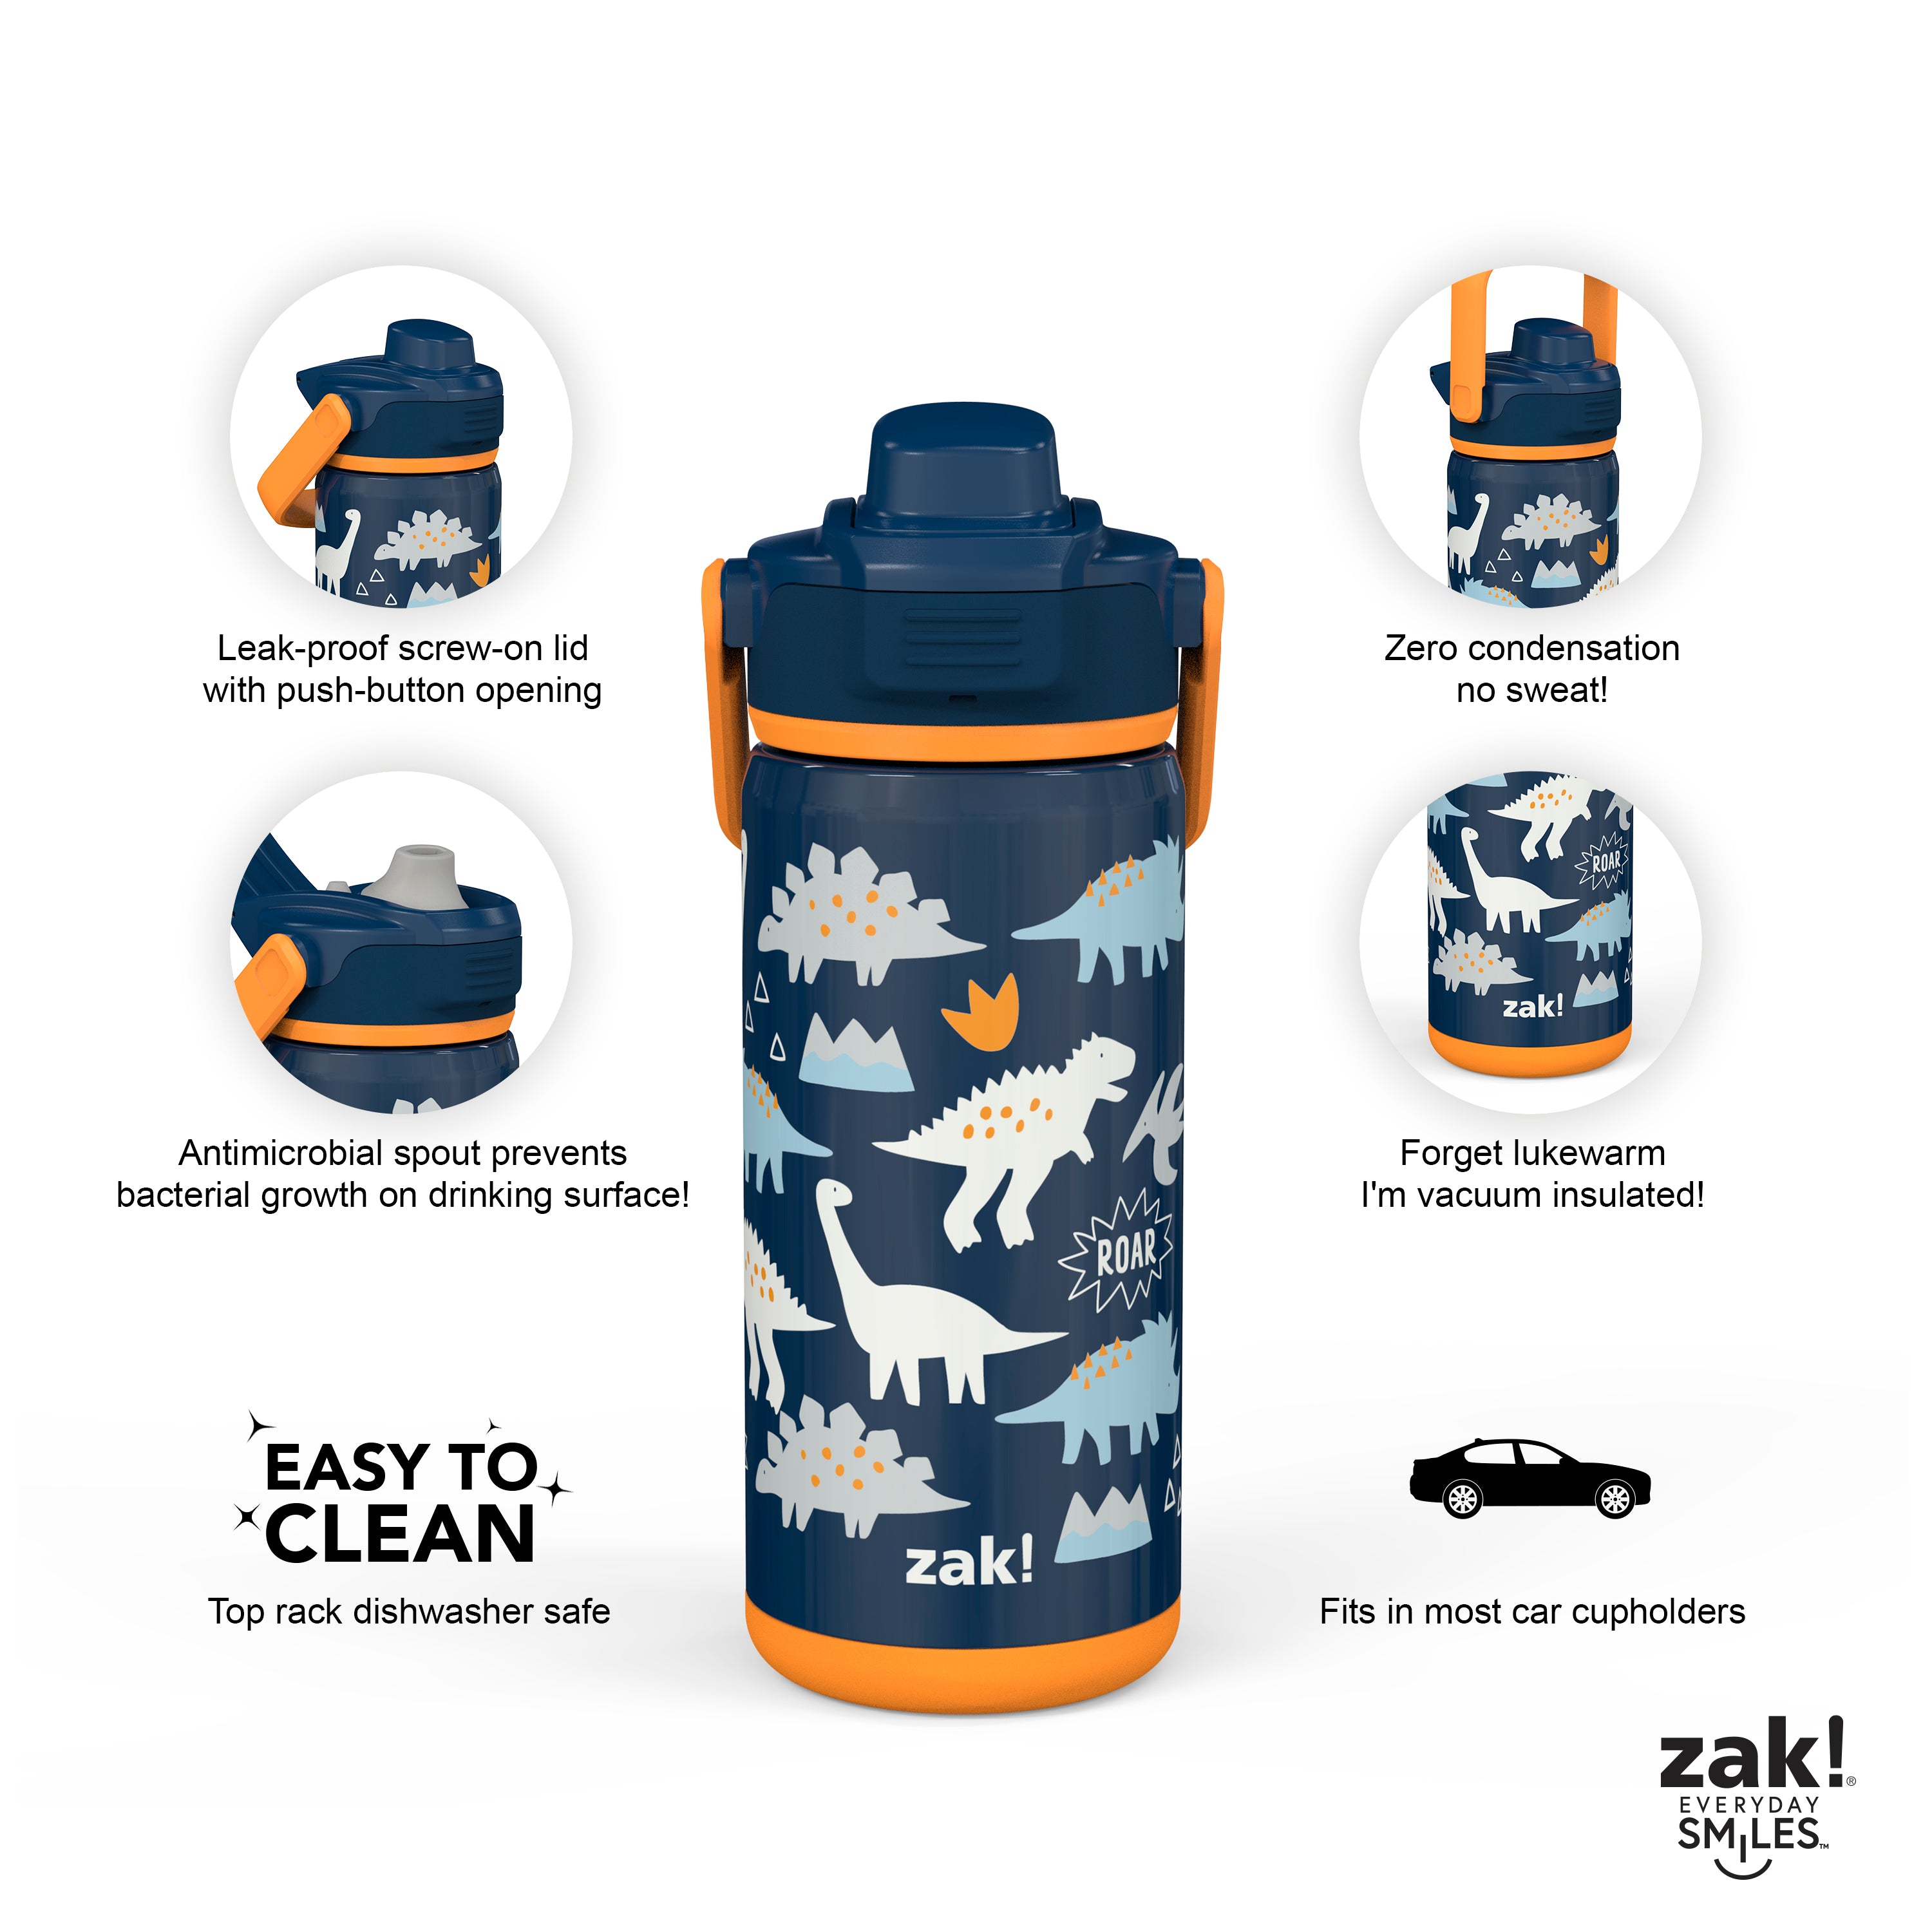 Zak! Water Bottle, Leak-Proof, 64 Ounce